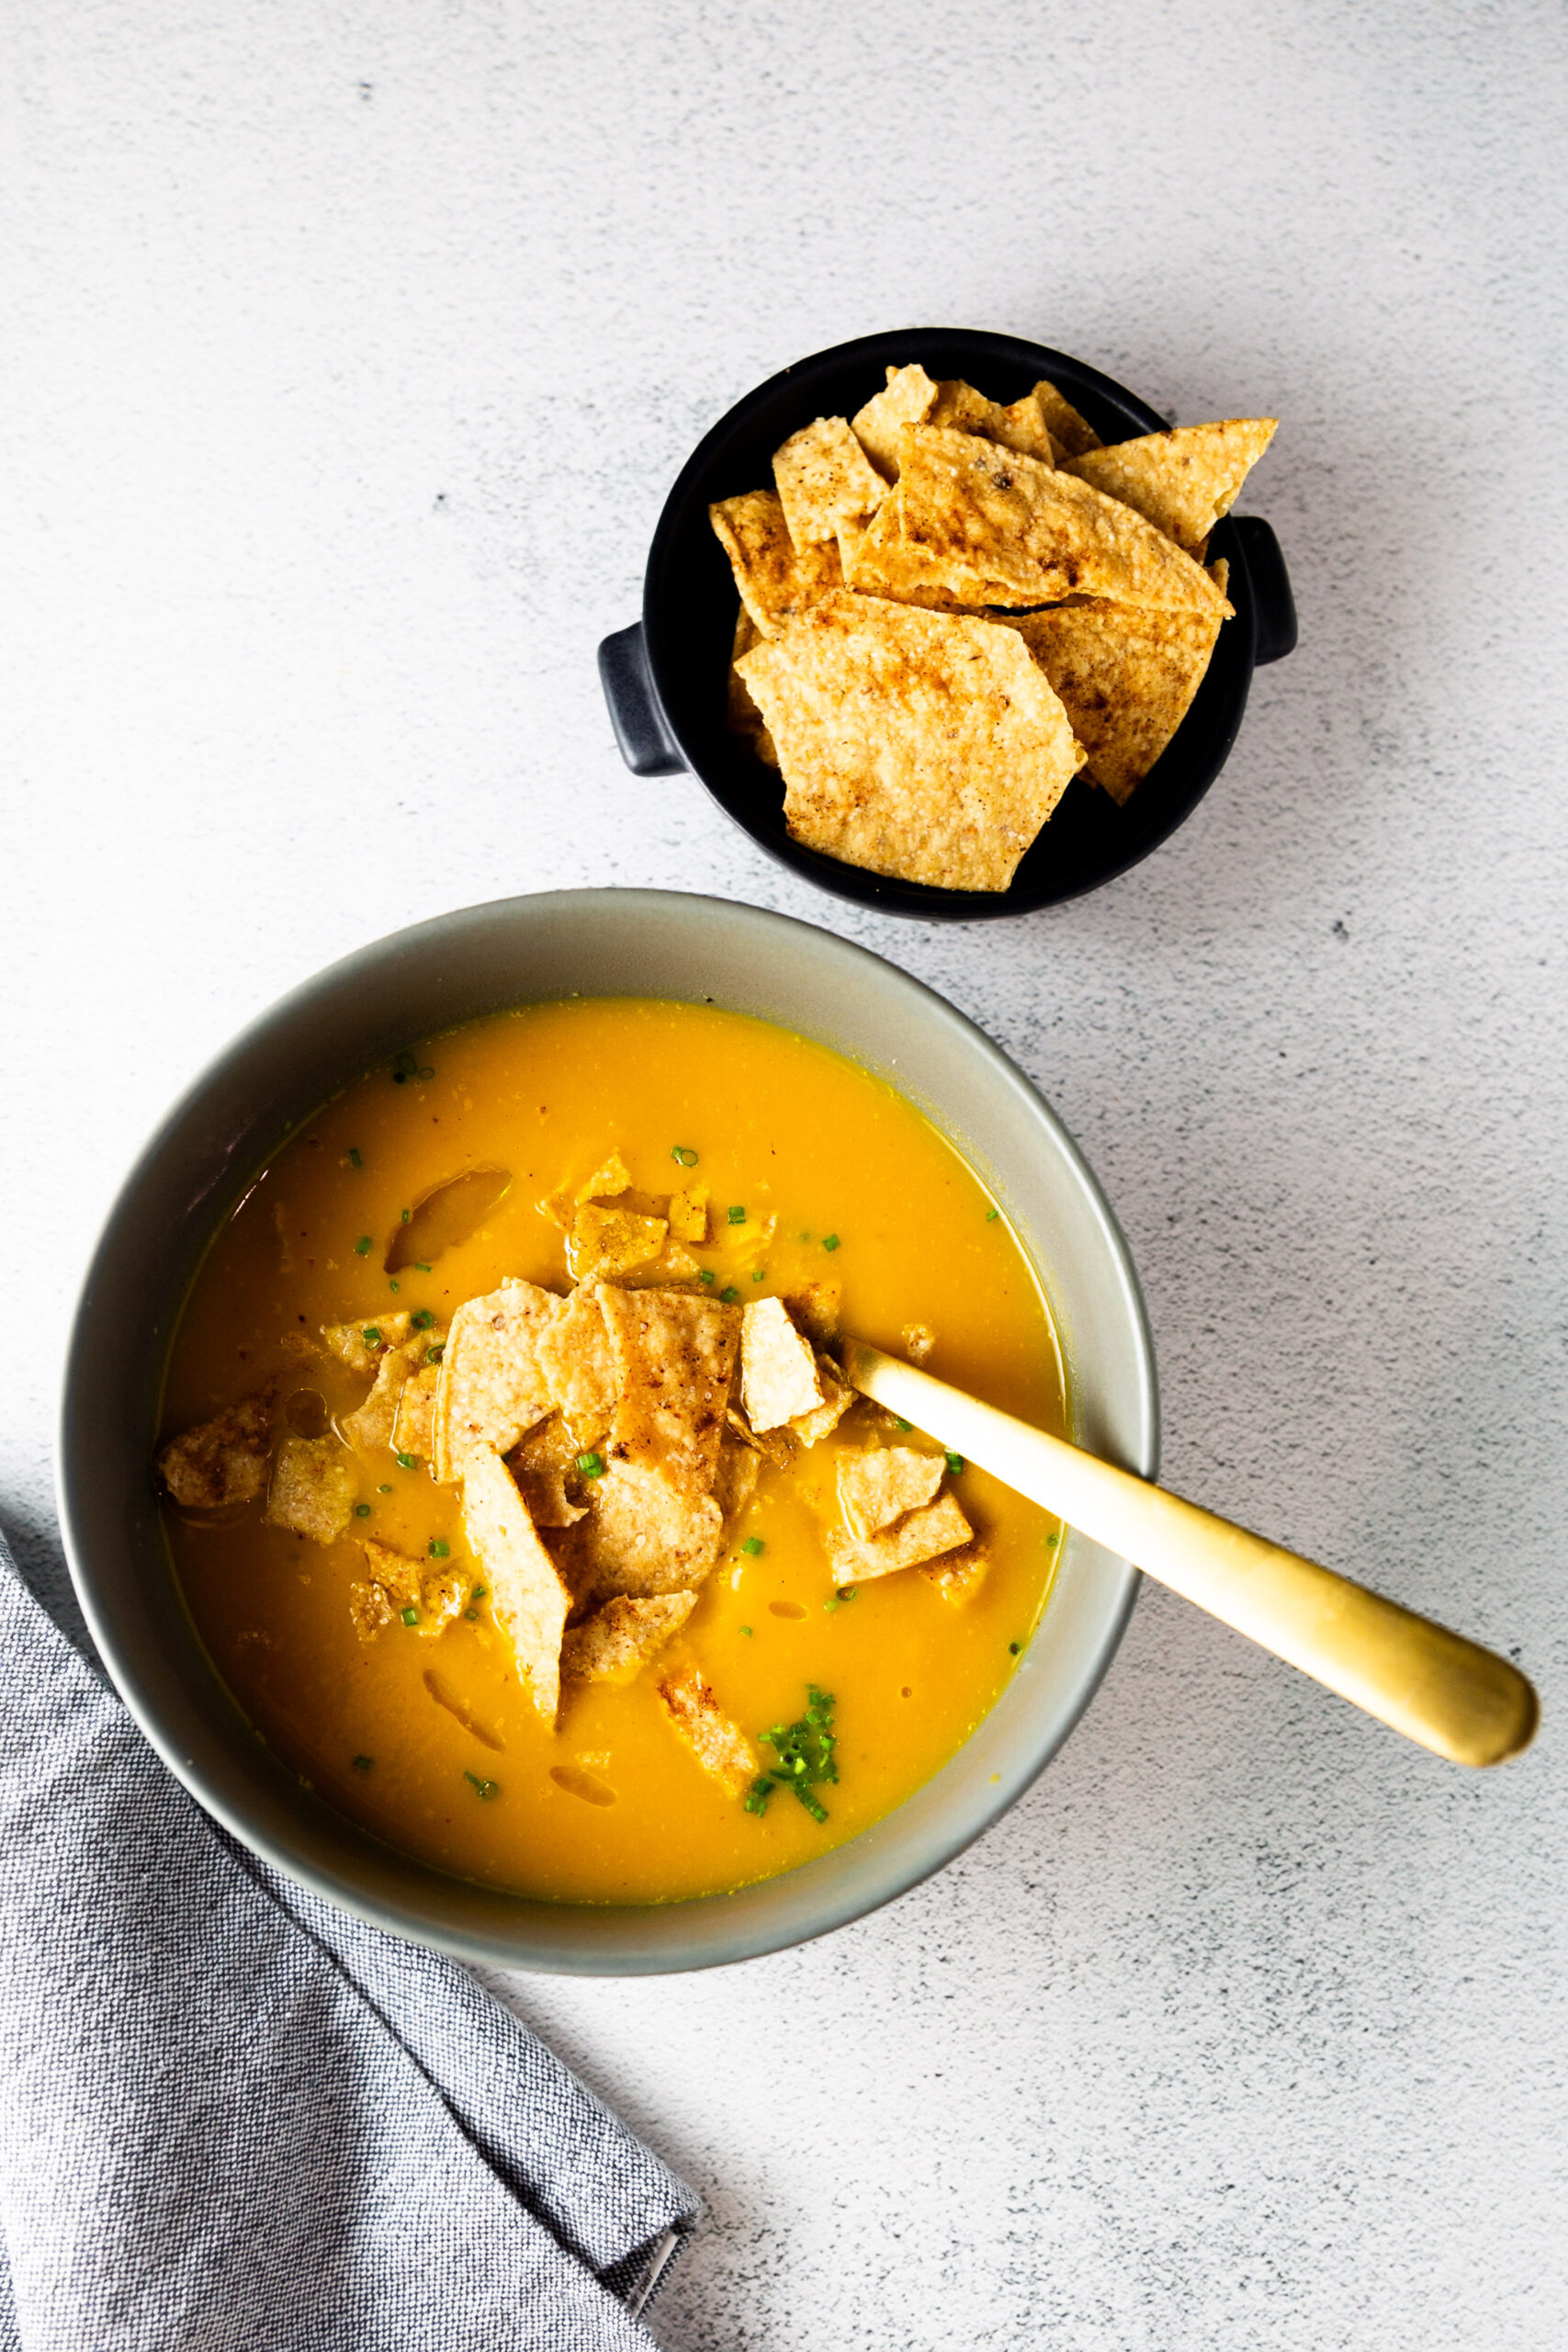 Una receta fácil de sopa de calabaza Butternut servida con chips de tortilla crujientes.